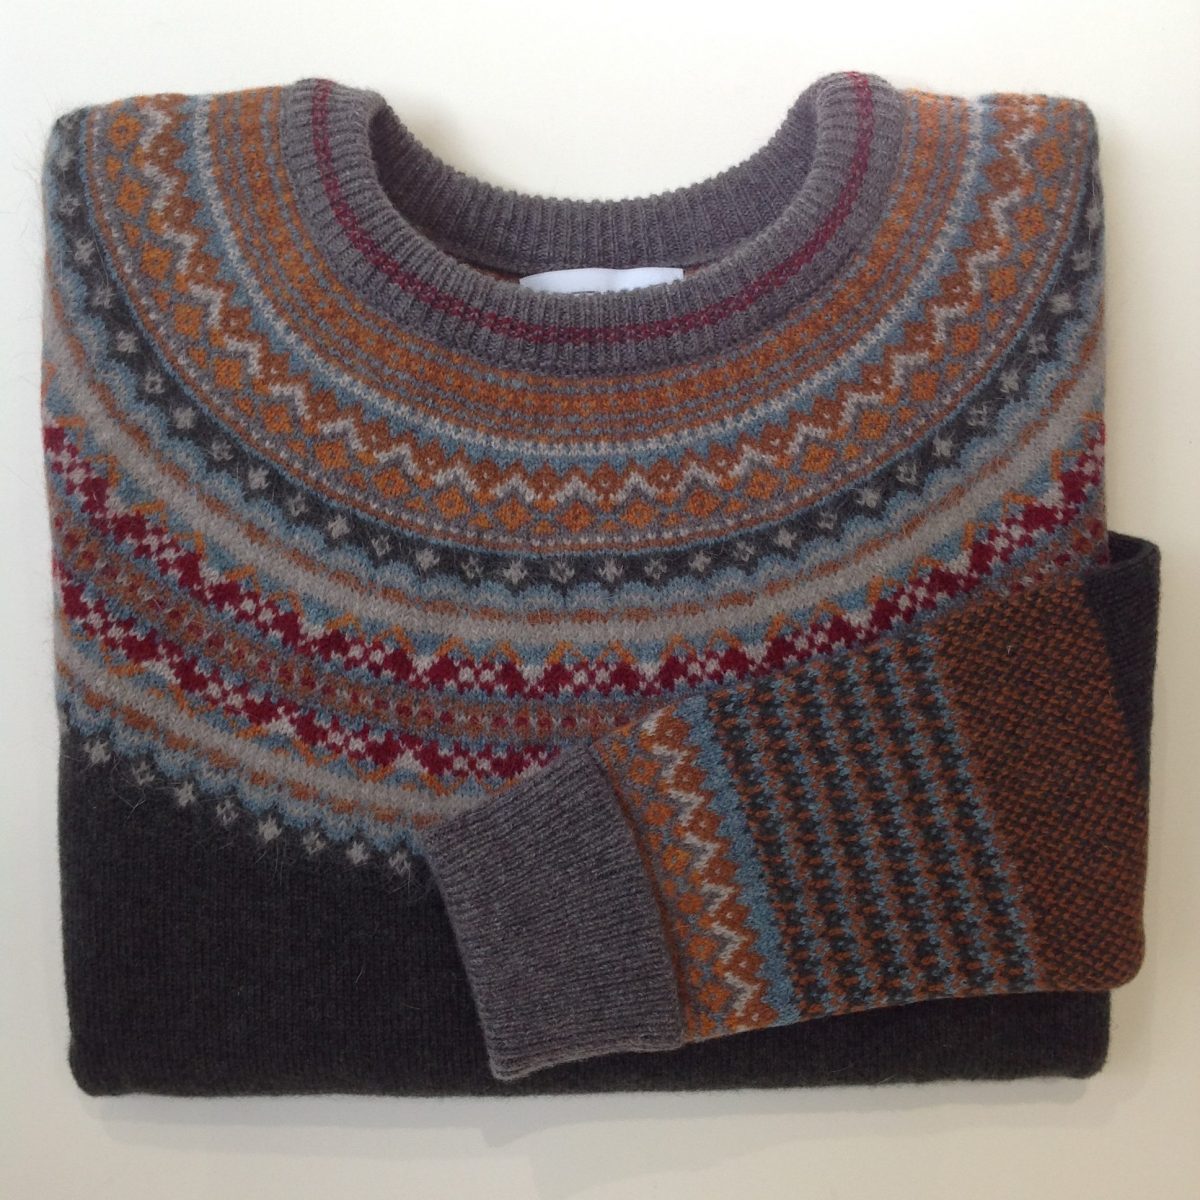 Alpine Sweater in Bracken - Old Chapel Gallery